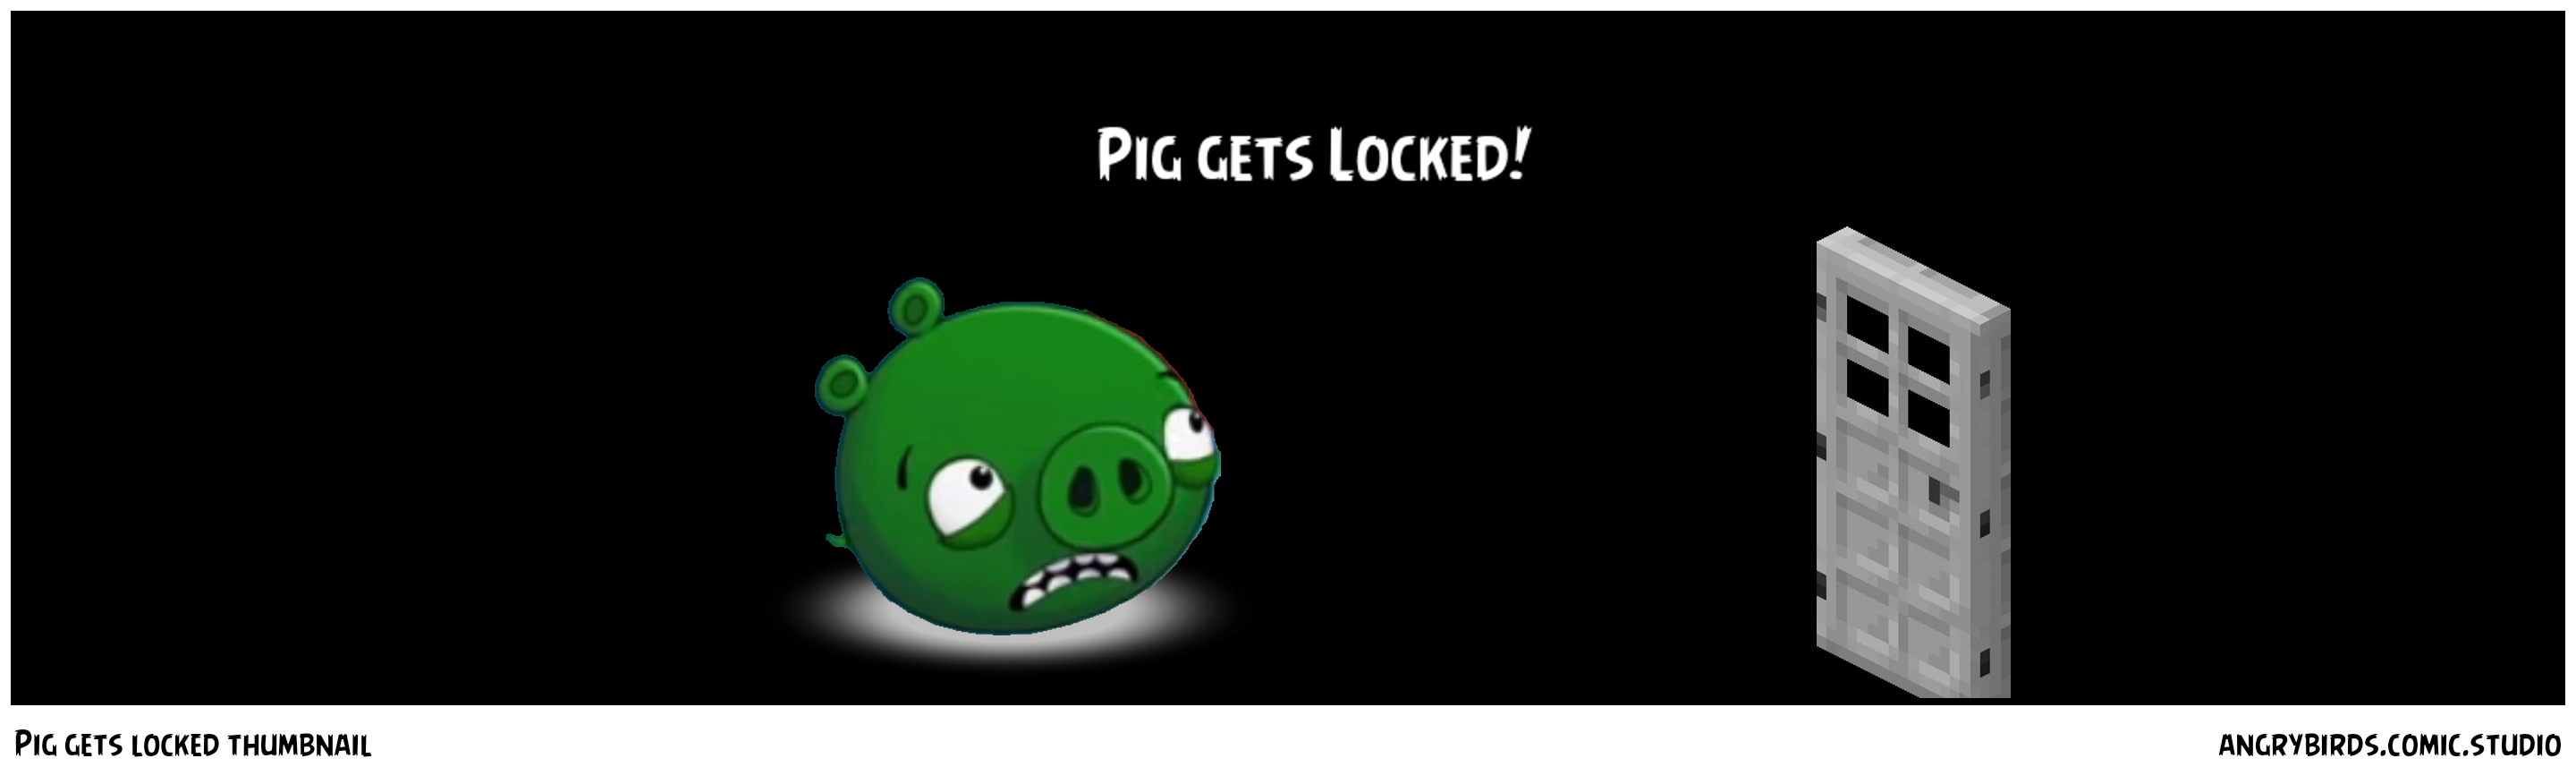 Pig gets locked thumbnail